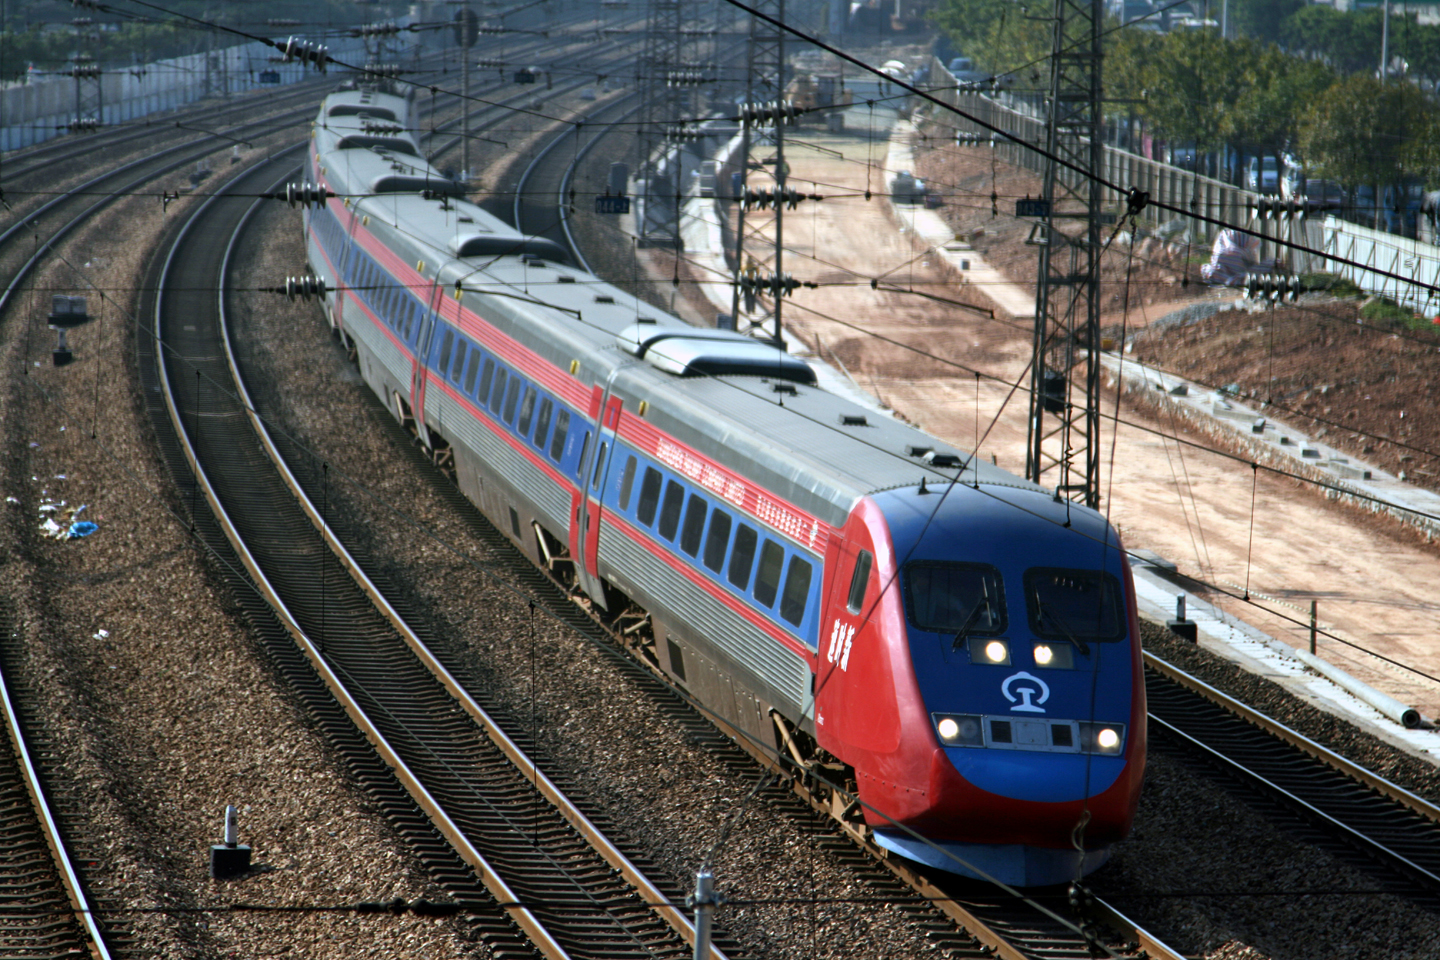 運行在廣深鐵路的SJ2000“新時速”列車